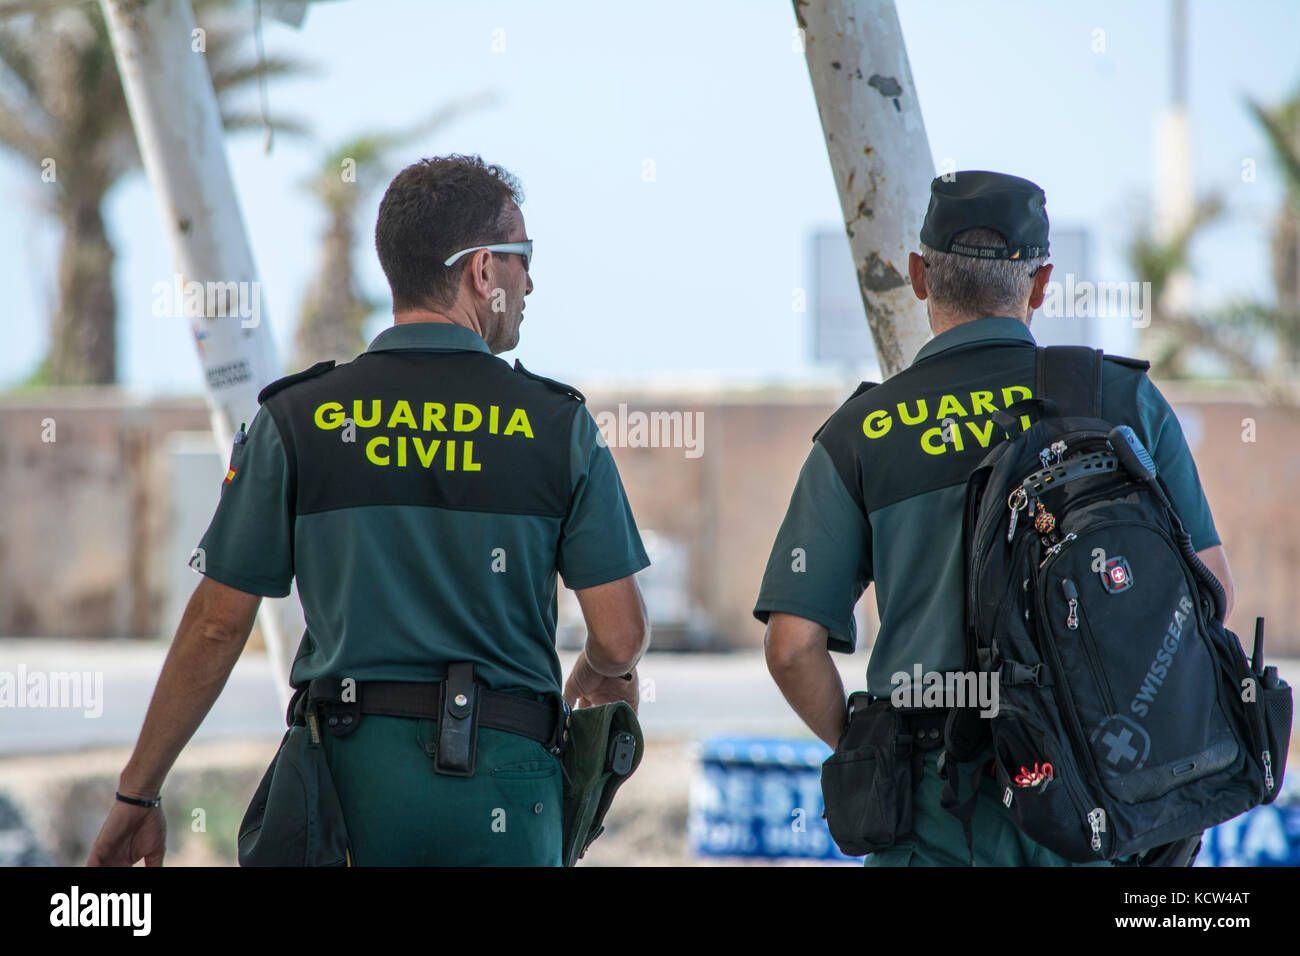 Guardia Civil: Las mujeres harán las mismas pruebas físicas que los hombres